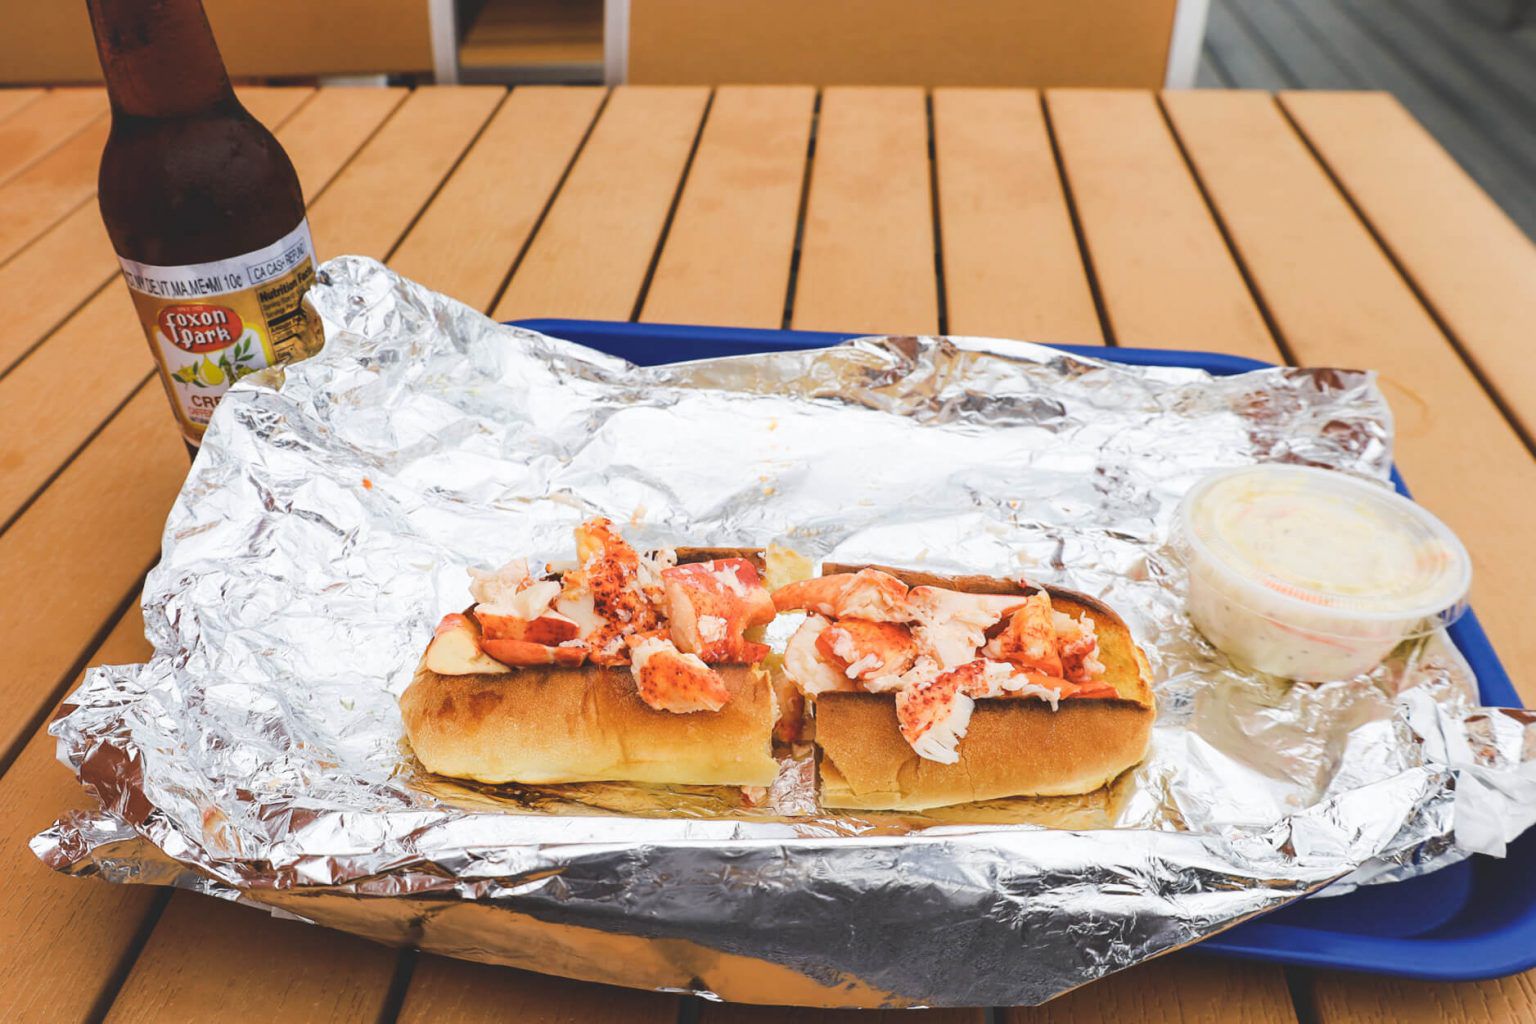 A meaty lobster roll.